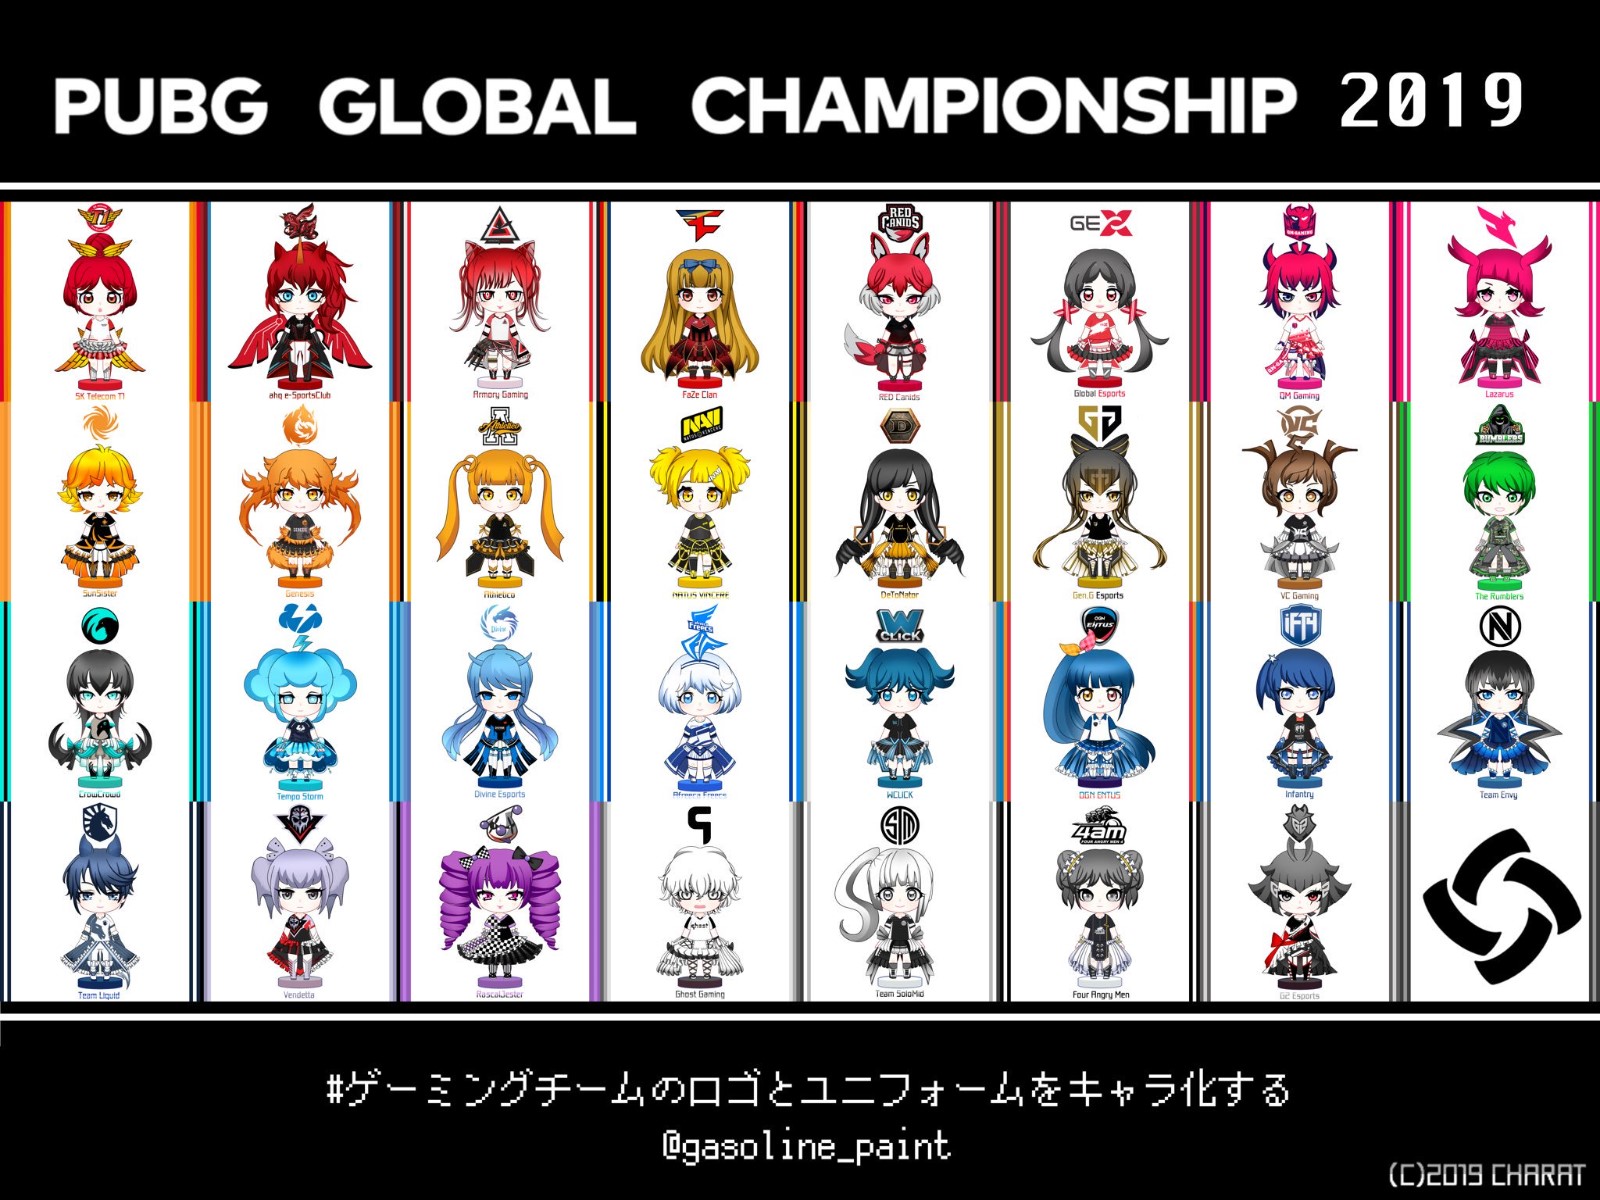 日本推主制作PGC所有参赛队伍卡通形象